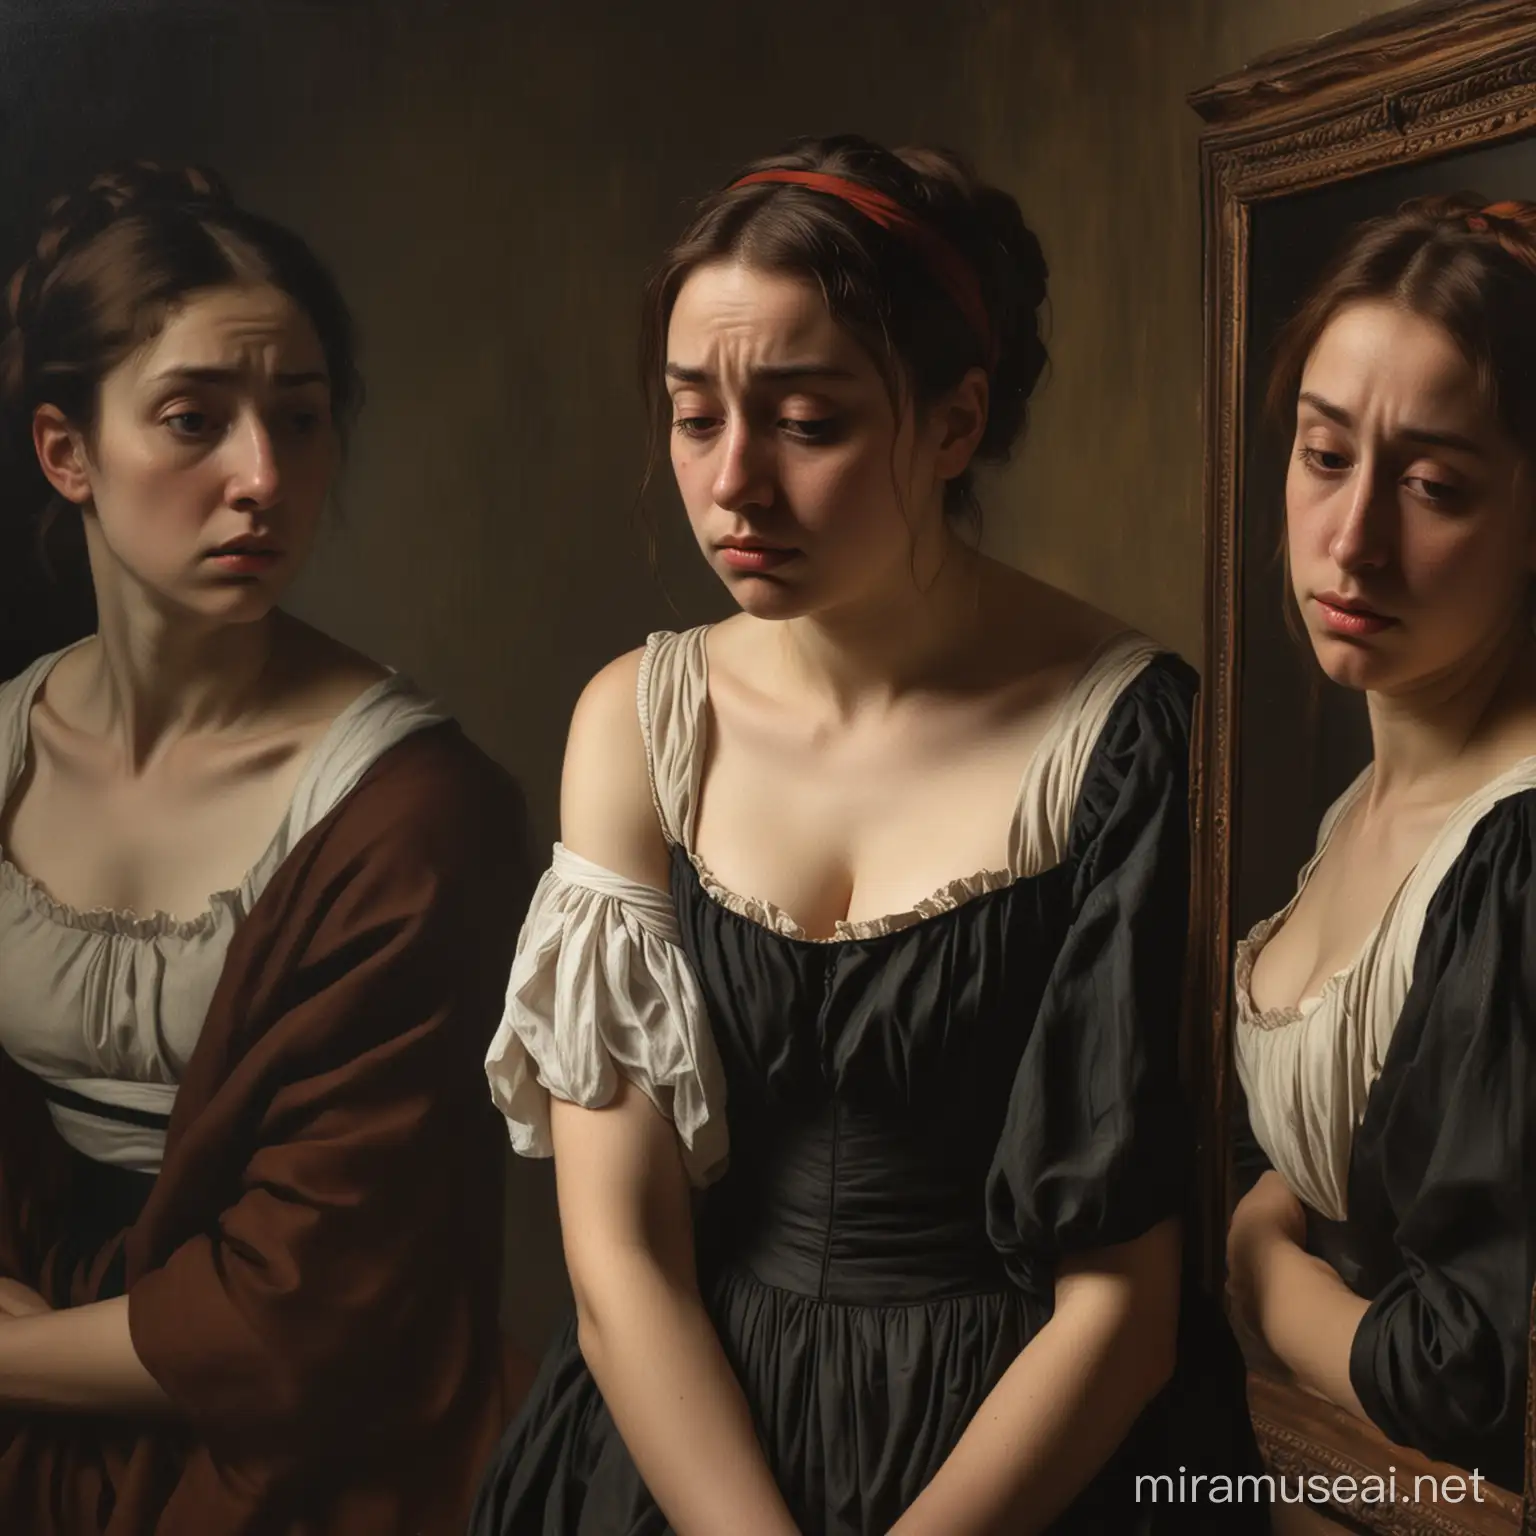 Une femme triste dans entre style de Caravaggio et Edgar Degas 